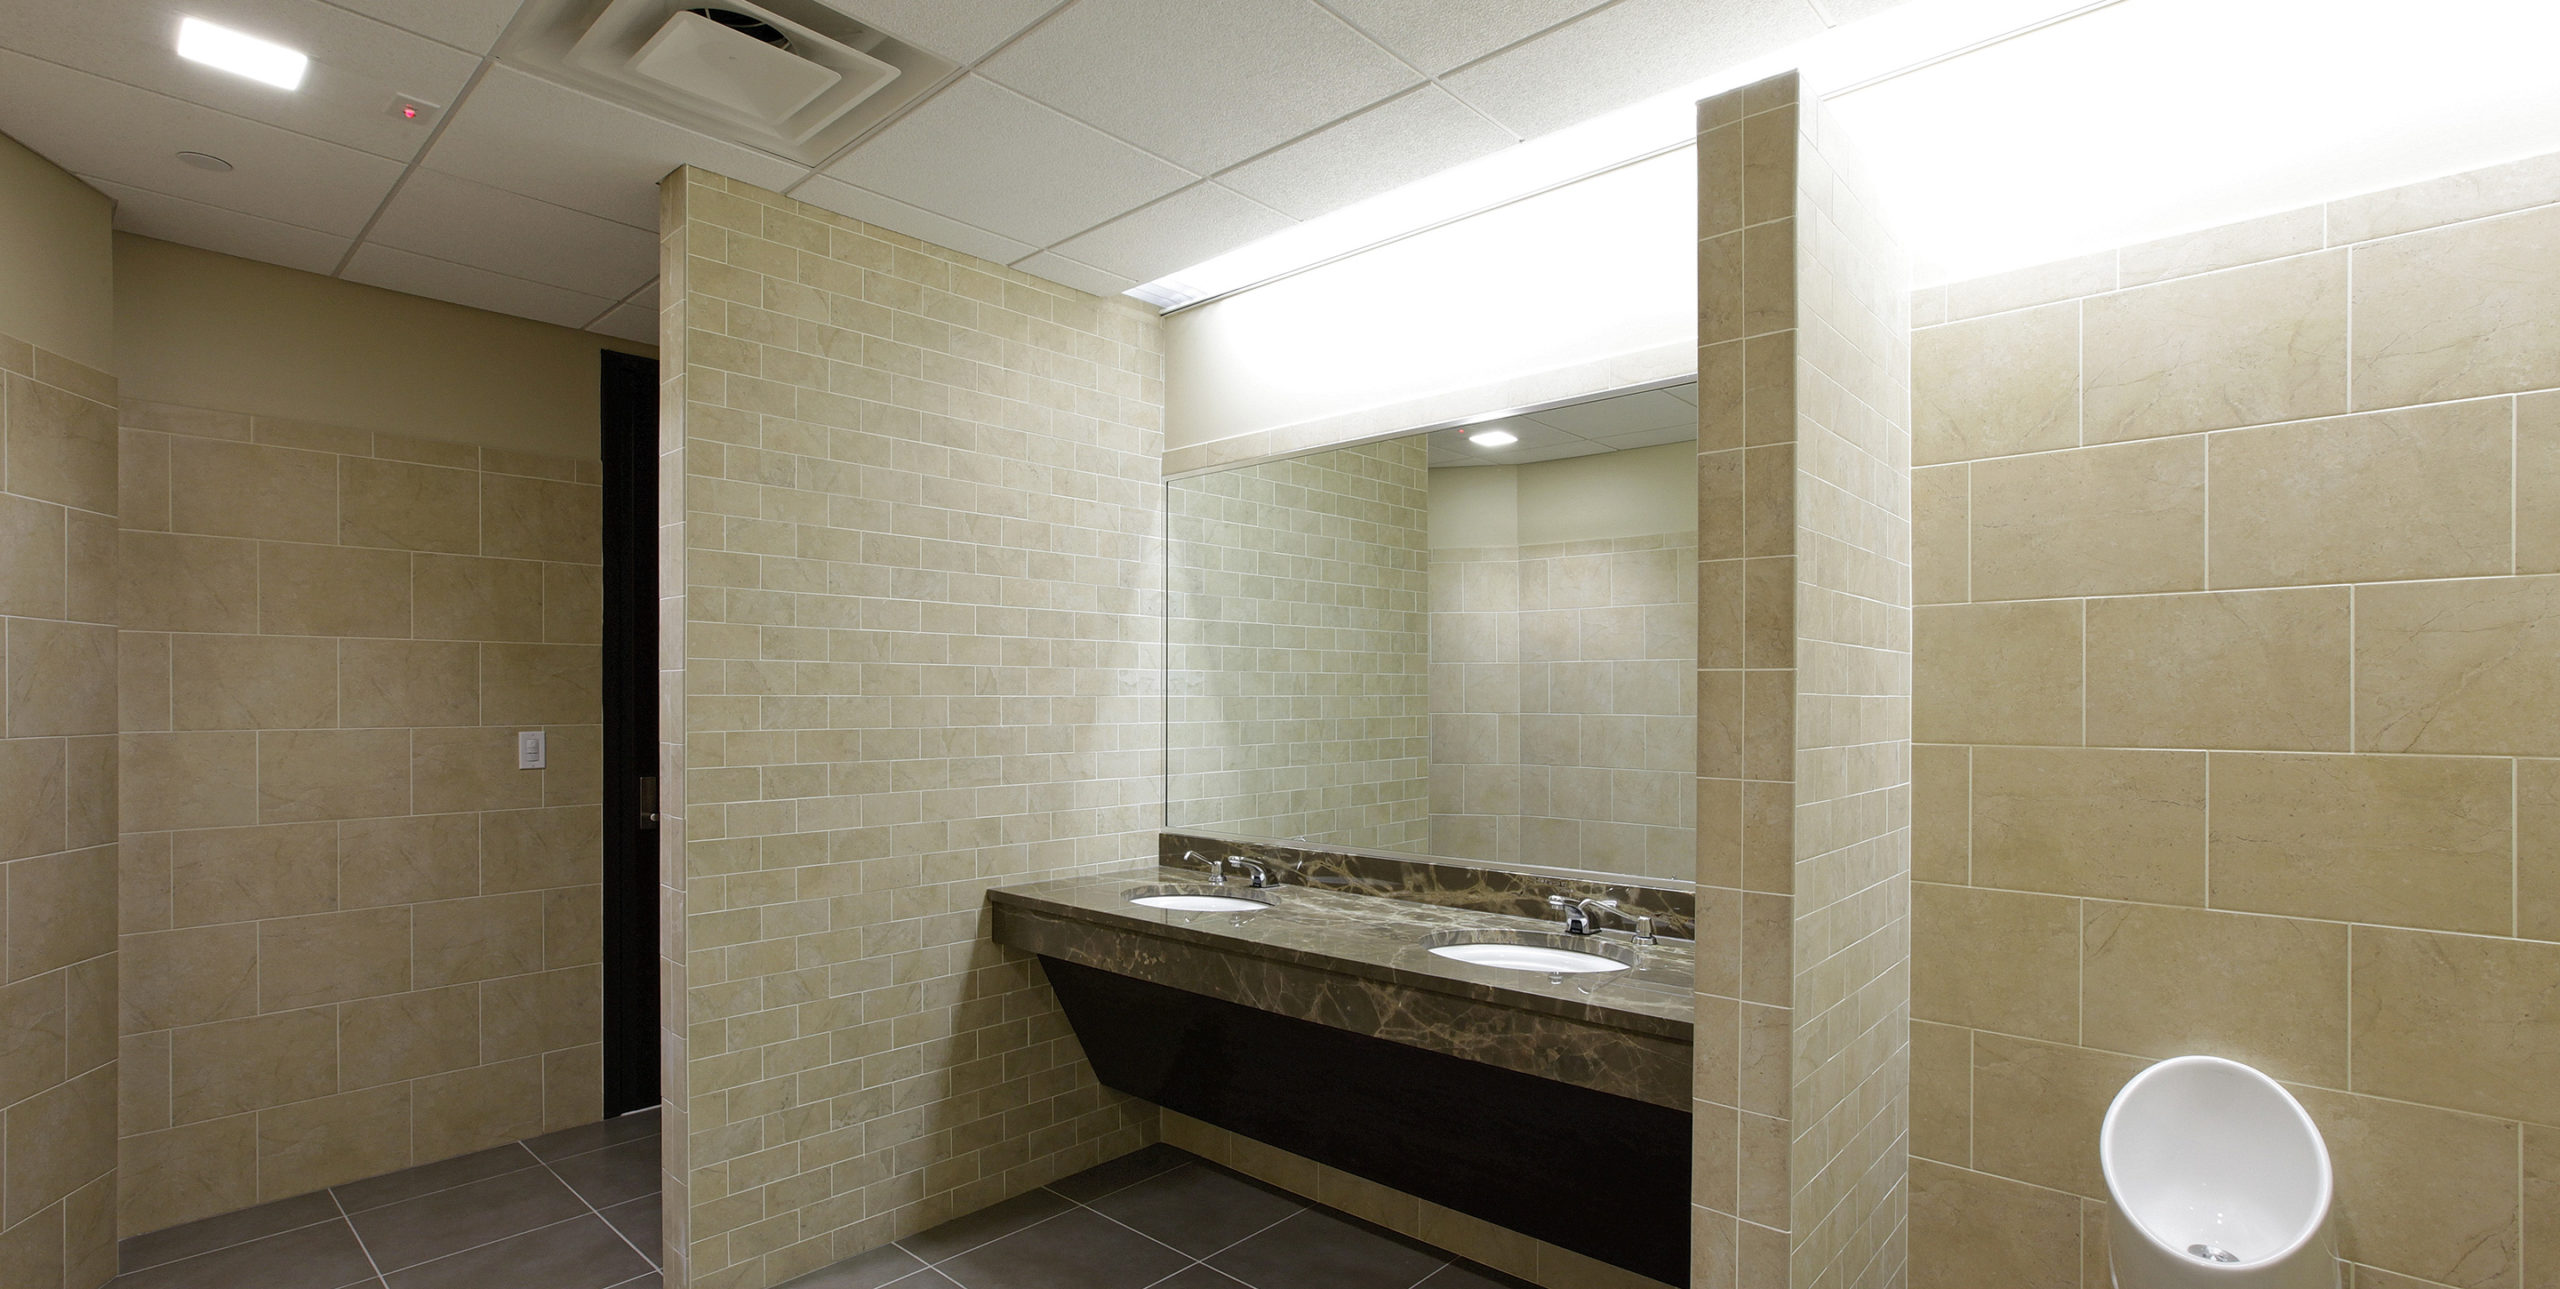 Bathroom at Stafford Associates